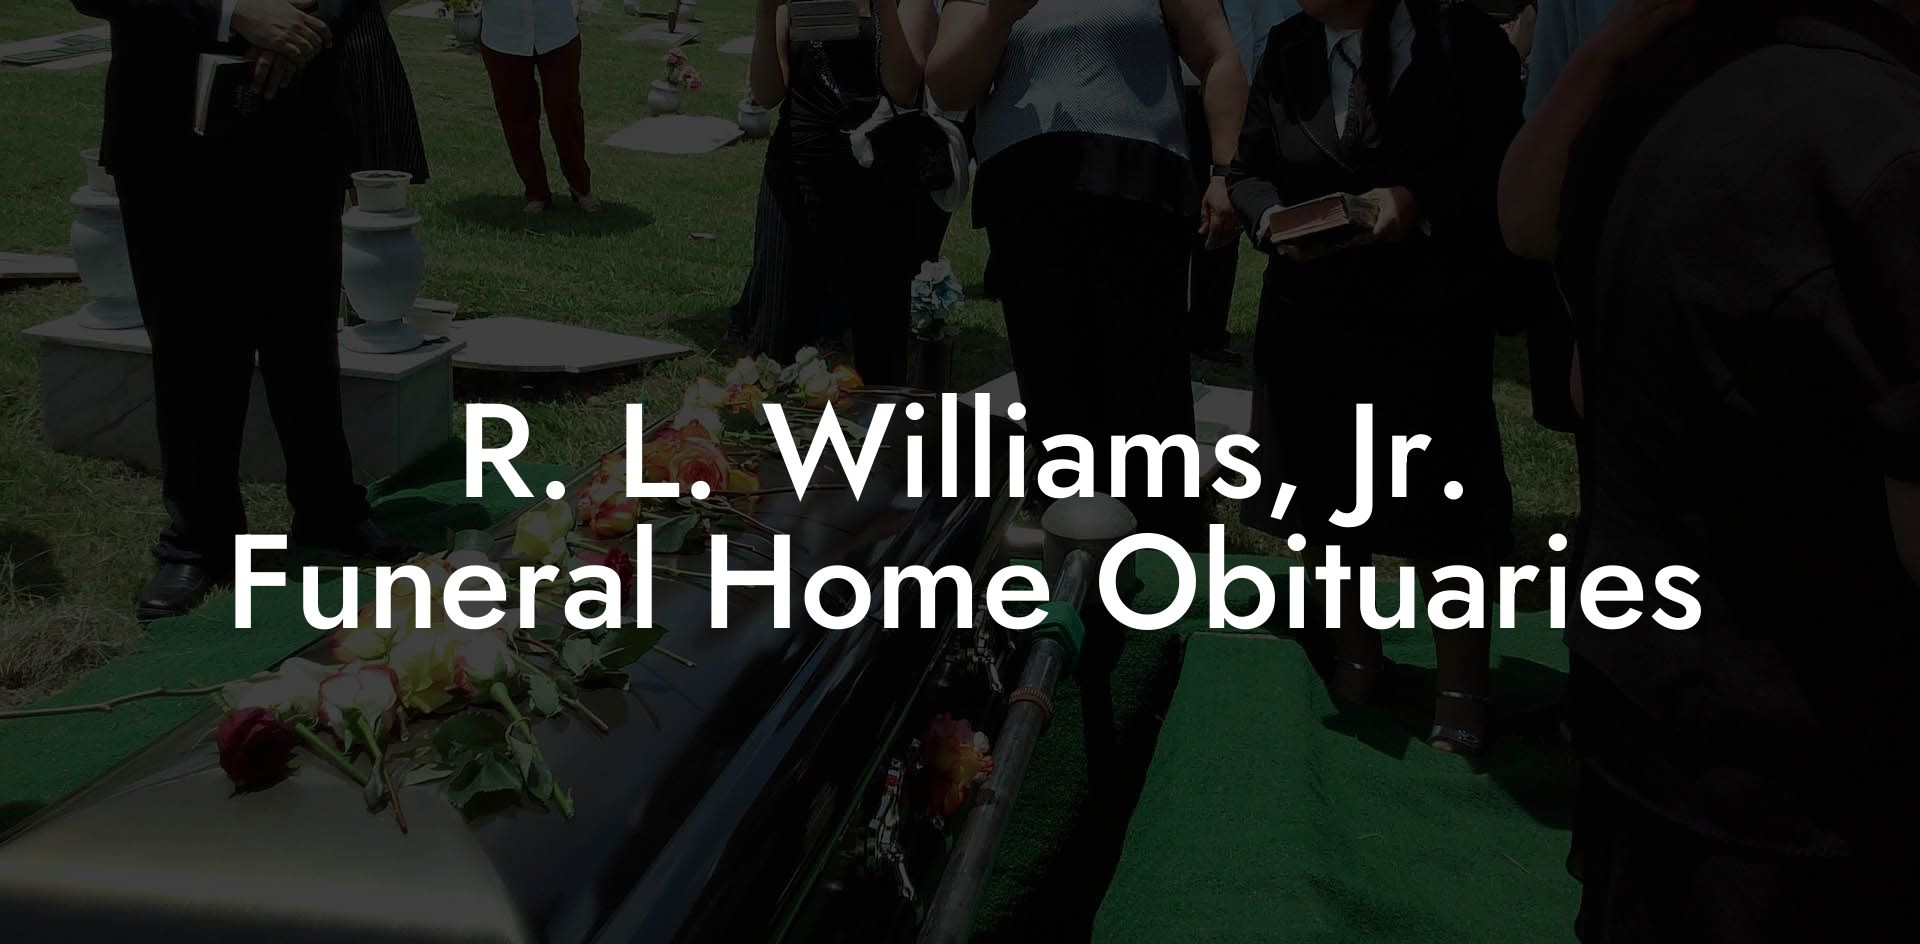 R. L. Williams, Jr. Funeral Home Obituaries